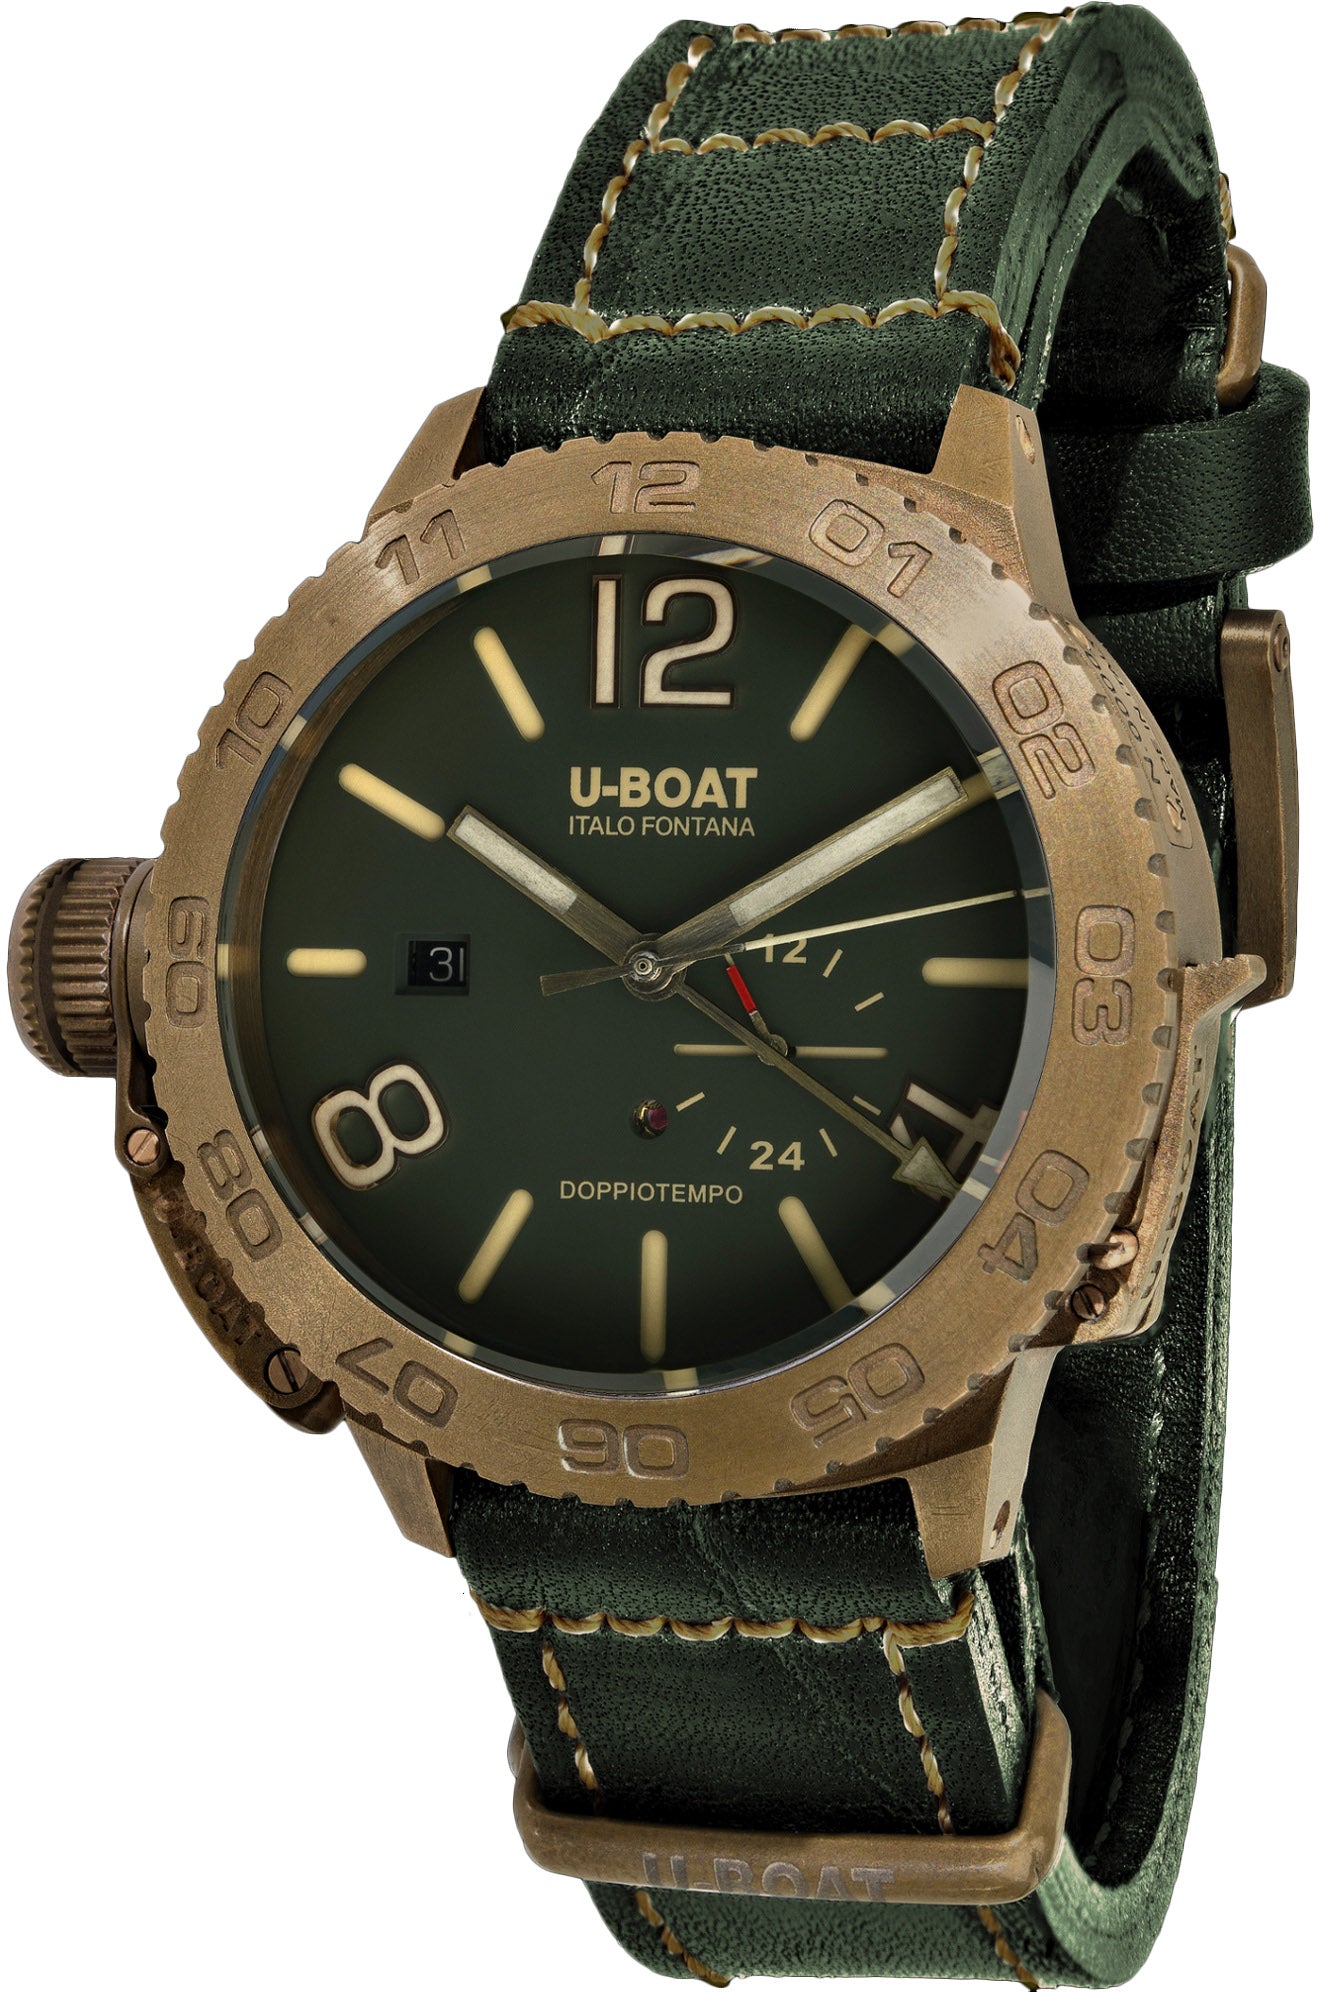 Photos - Wrist Watch U-Boat Watch Doppio Tempo Bronze D UB-936 